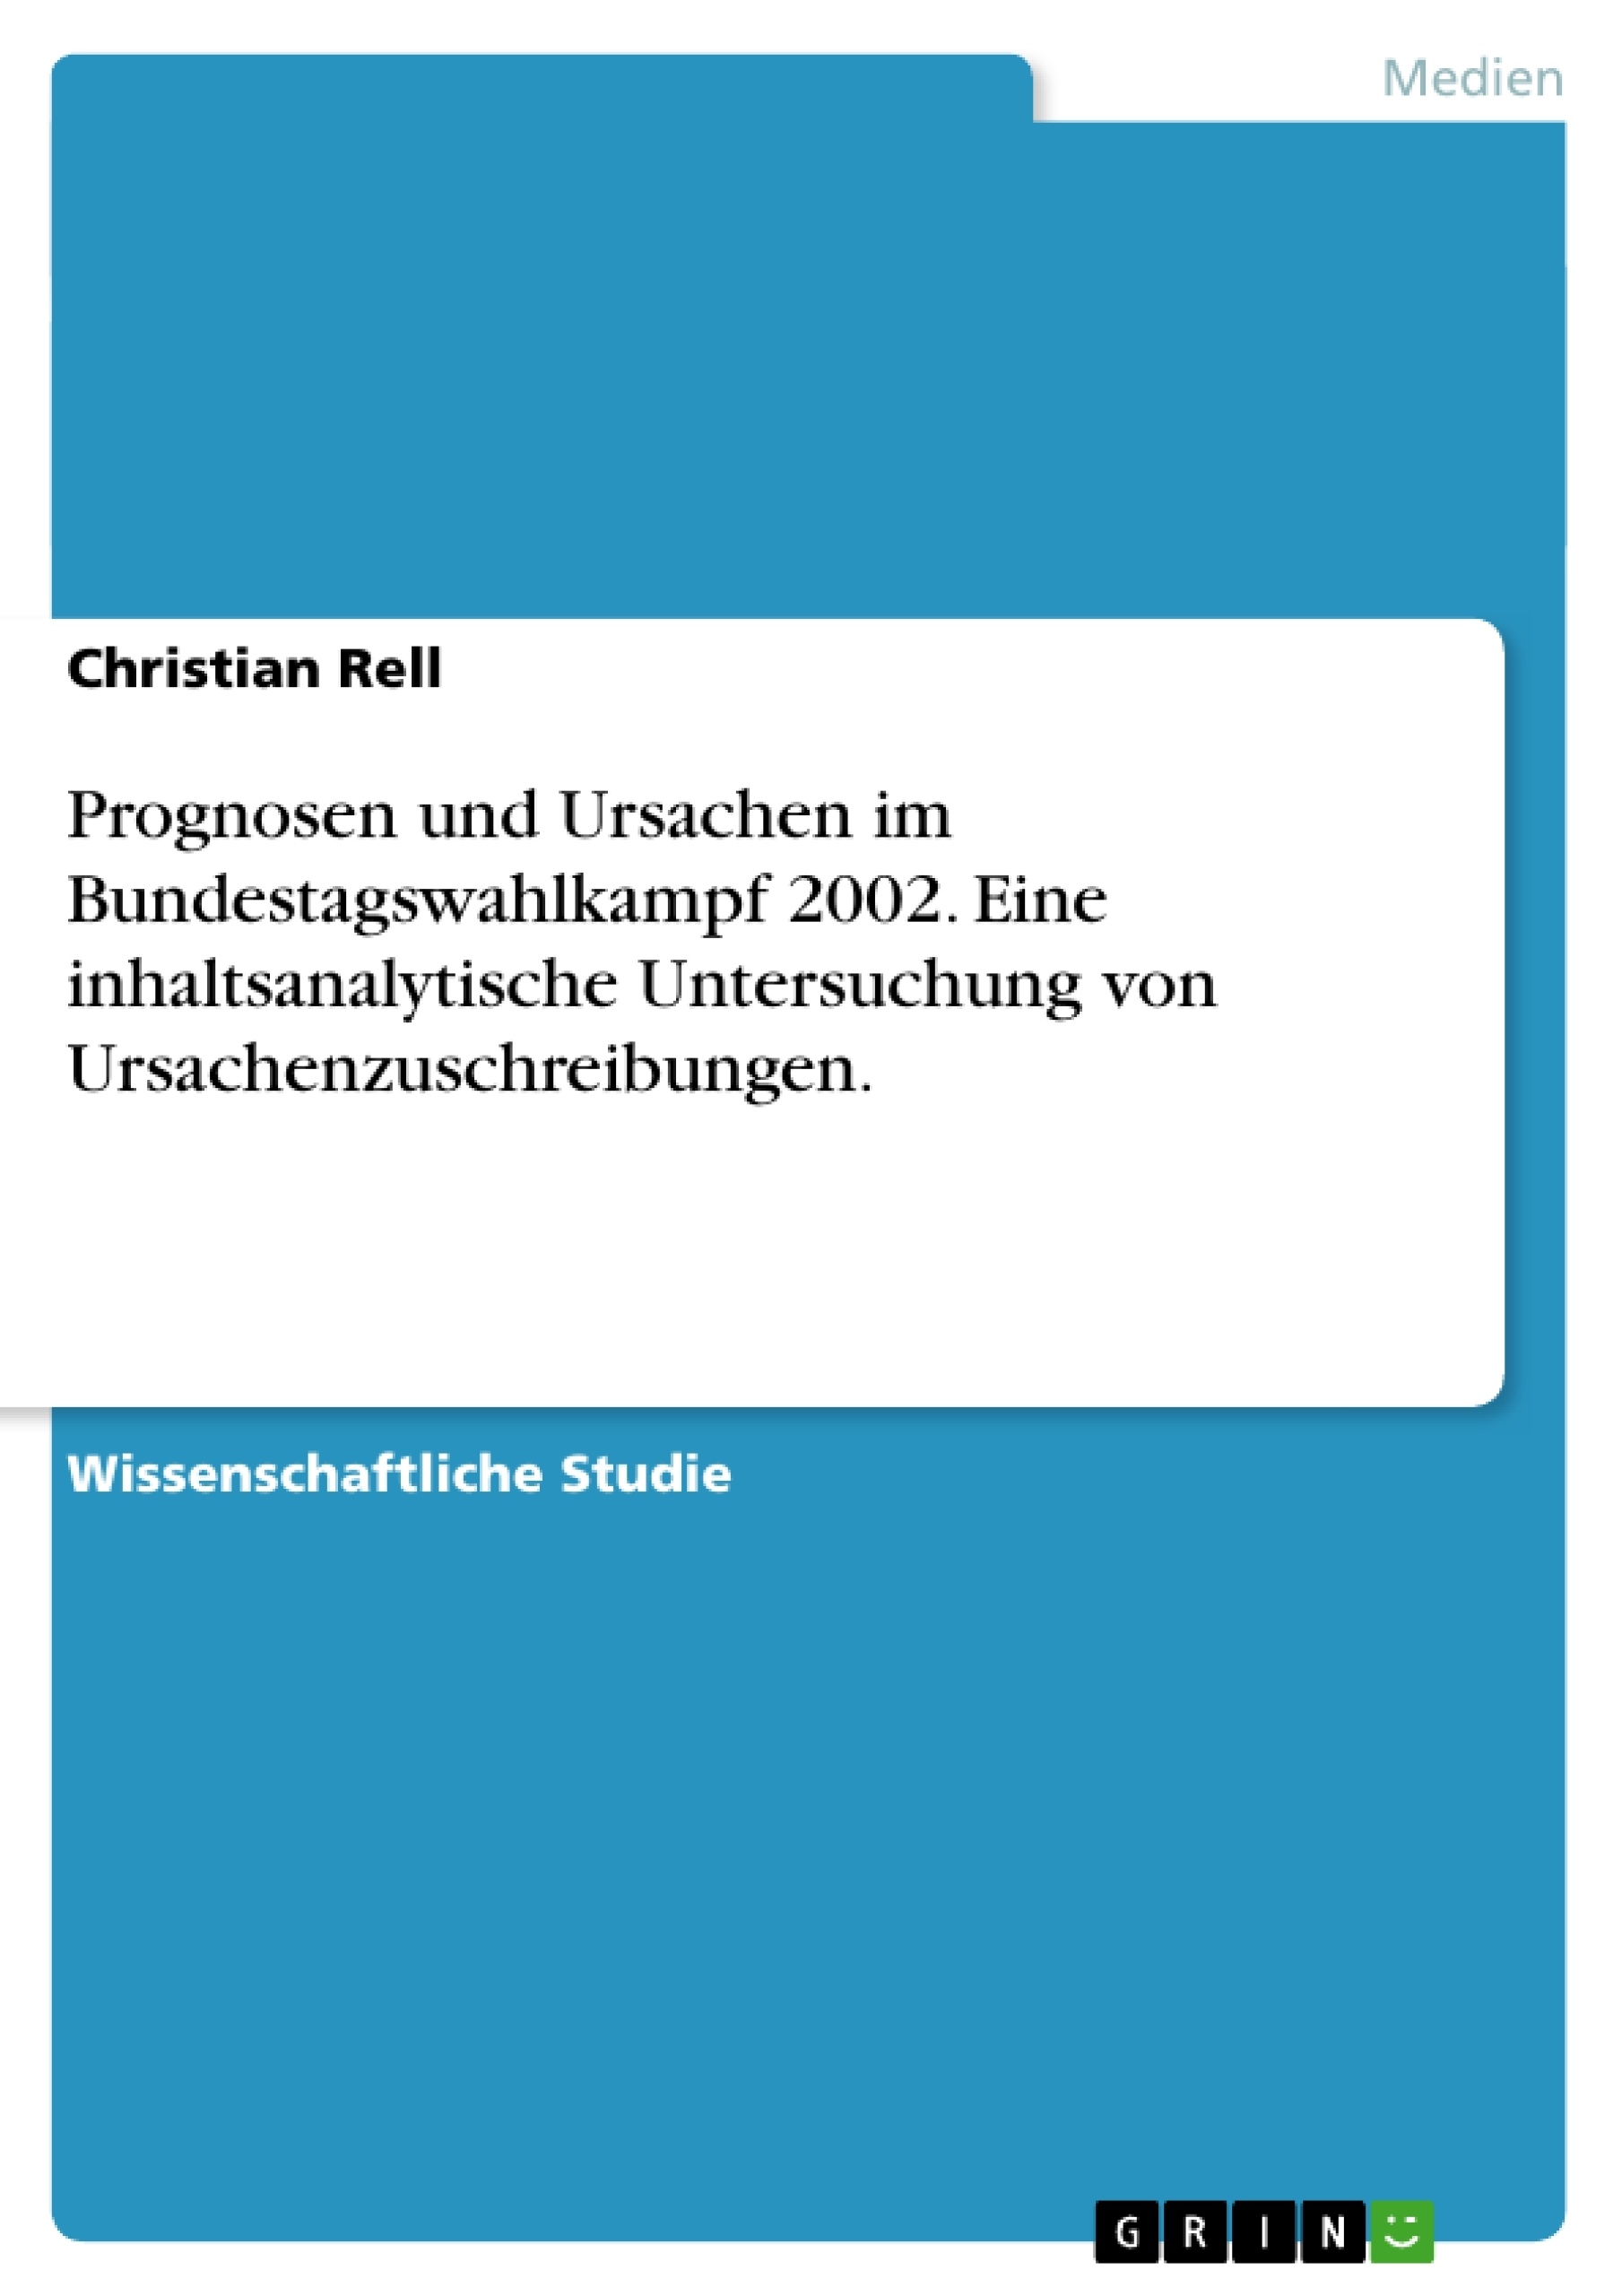 Titre: Prognosen und Ursachen im Bundestagswahlkampf 2002. Eine inhaltsanalytische Untersuchung von Ursachenzuschreibungen.